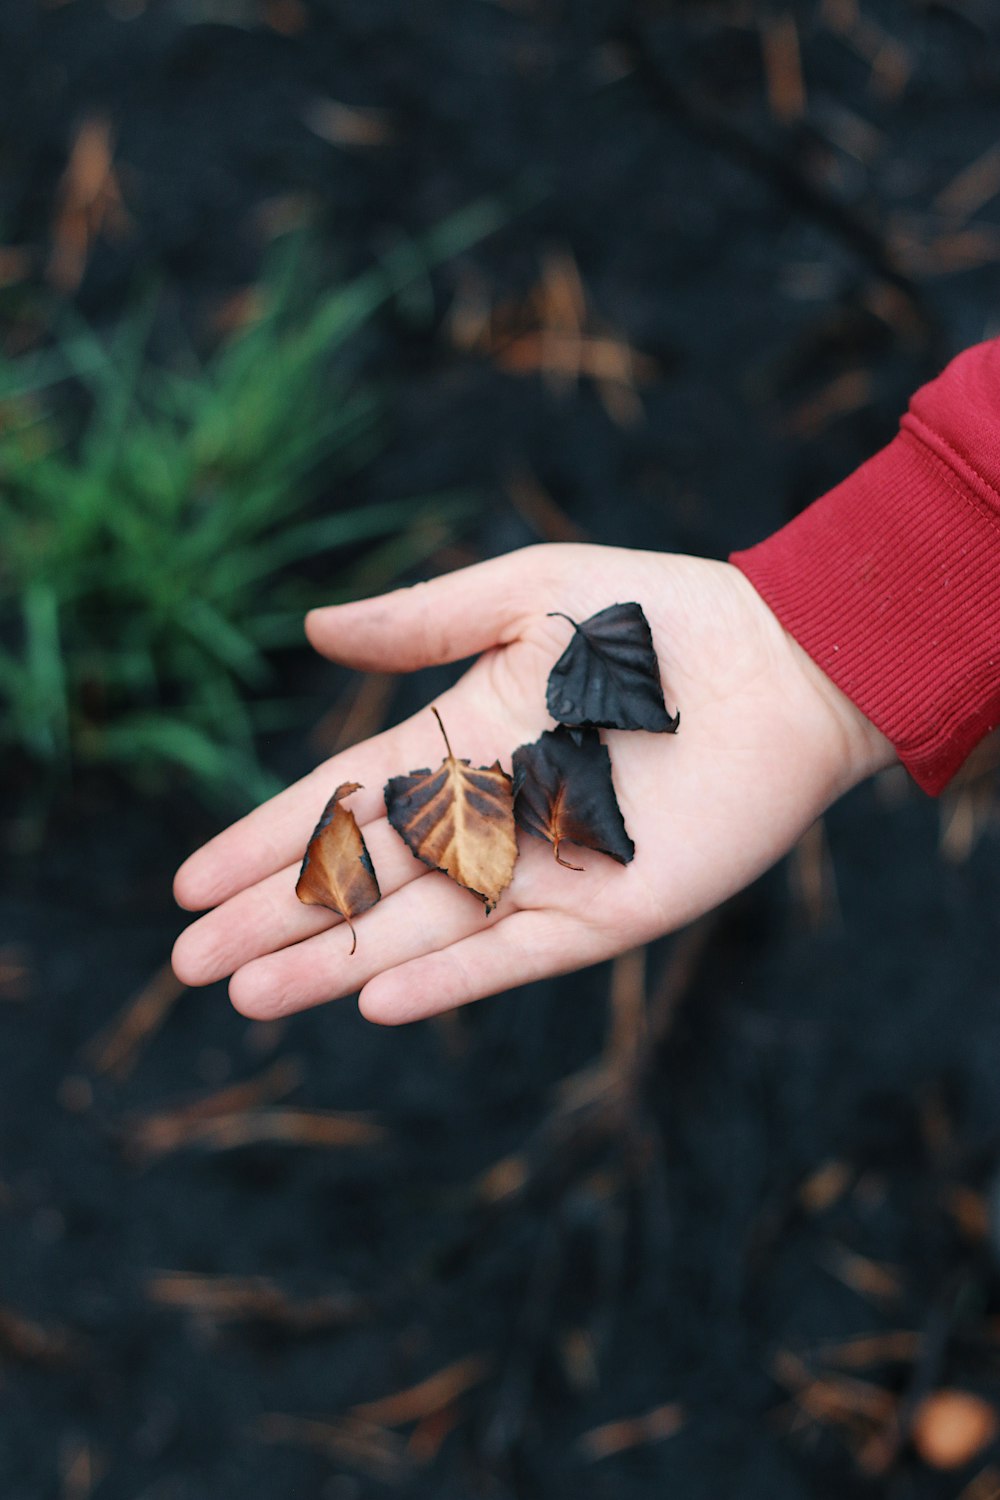 quattro foglie marroni e nere nel palmo della mano della persona